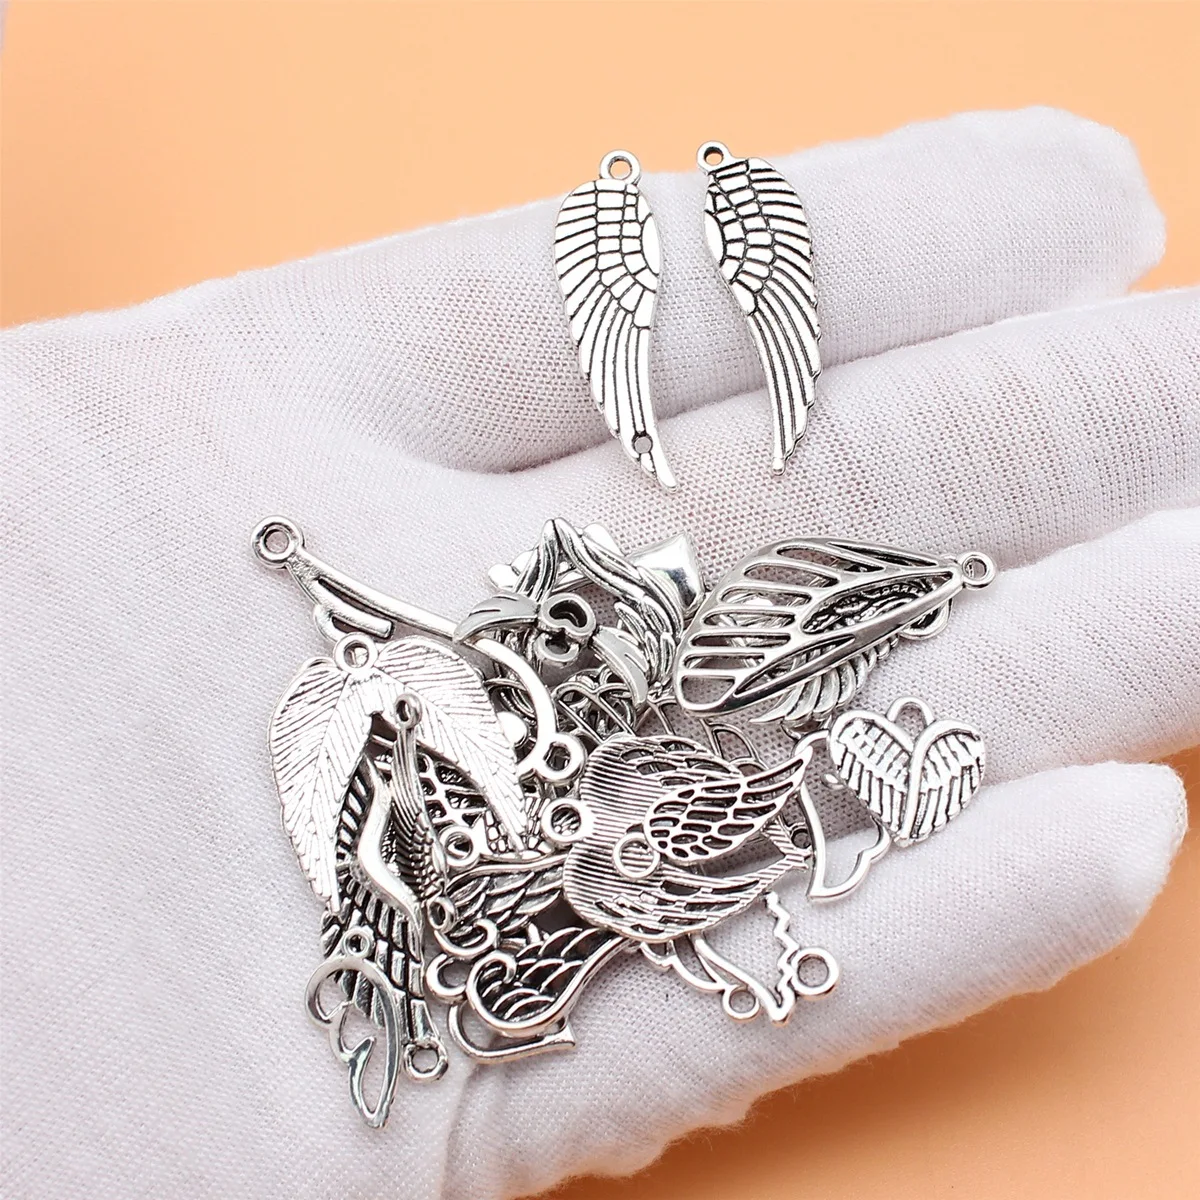 26 szt. Antyczny srebrny kolor skrzydła Charms kolekcja do tworzenia biżuterii, 26 stylów, po 1 z każdego